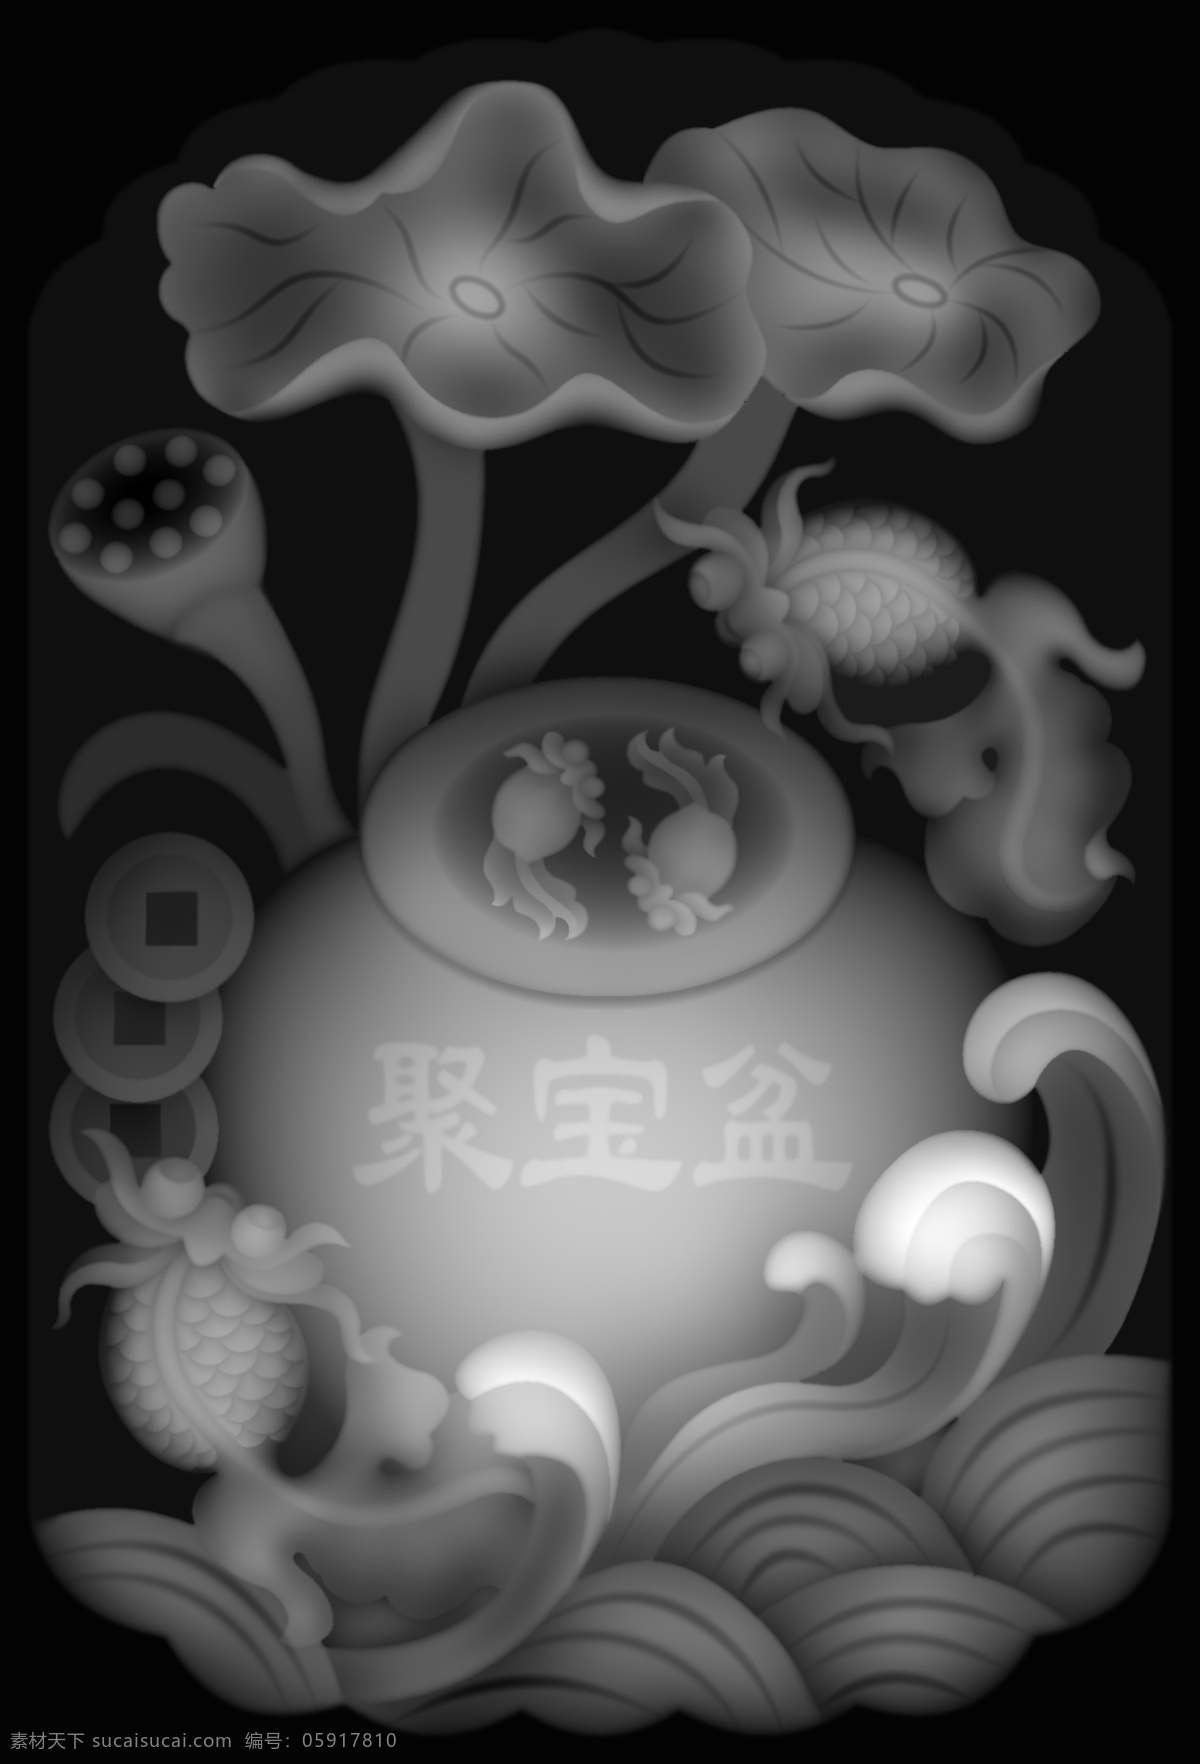 聚宝盆 鱼 精雕图 灰度图 cnc 灰度 图 精雕 分享 分 文化艺术 传统文化 bmp